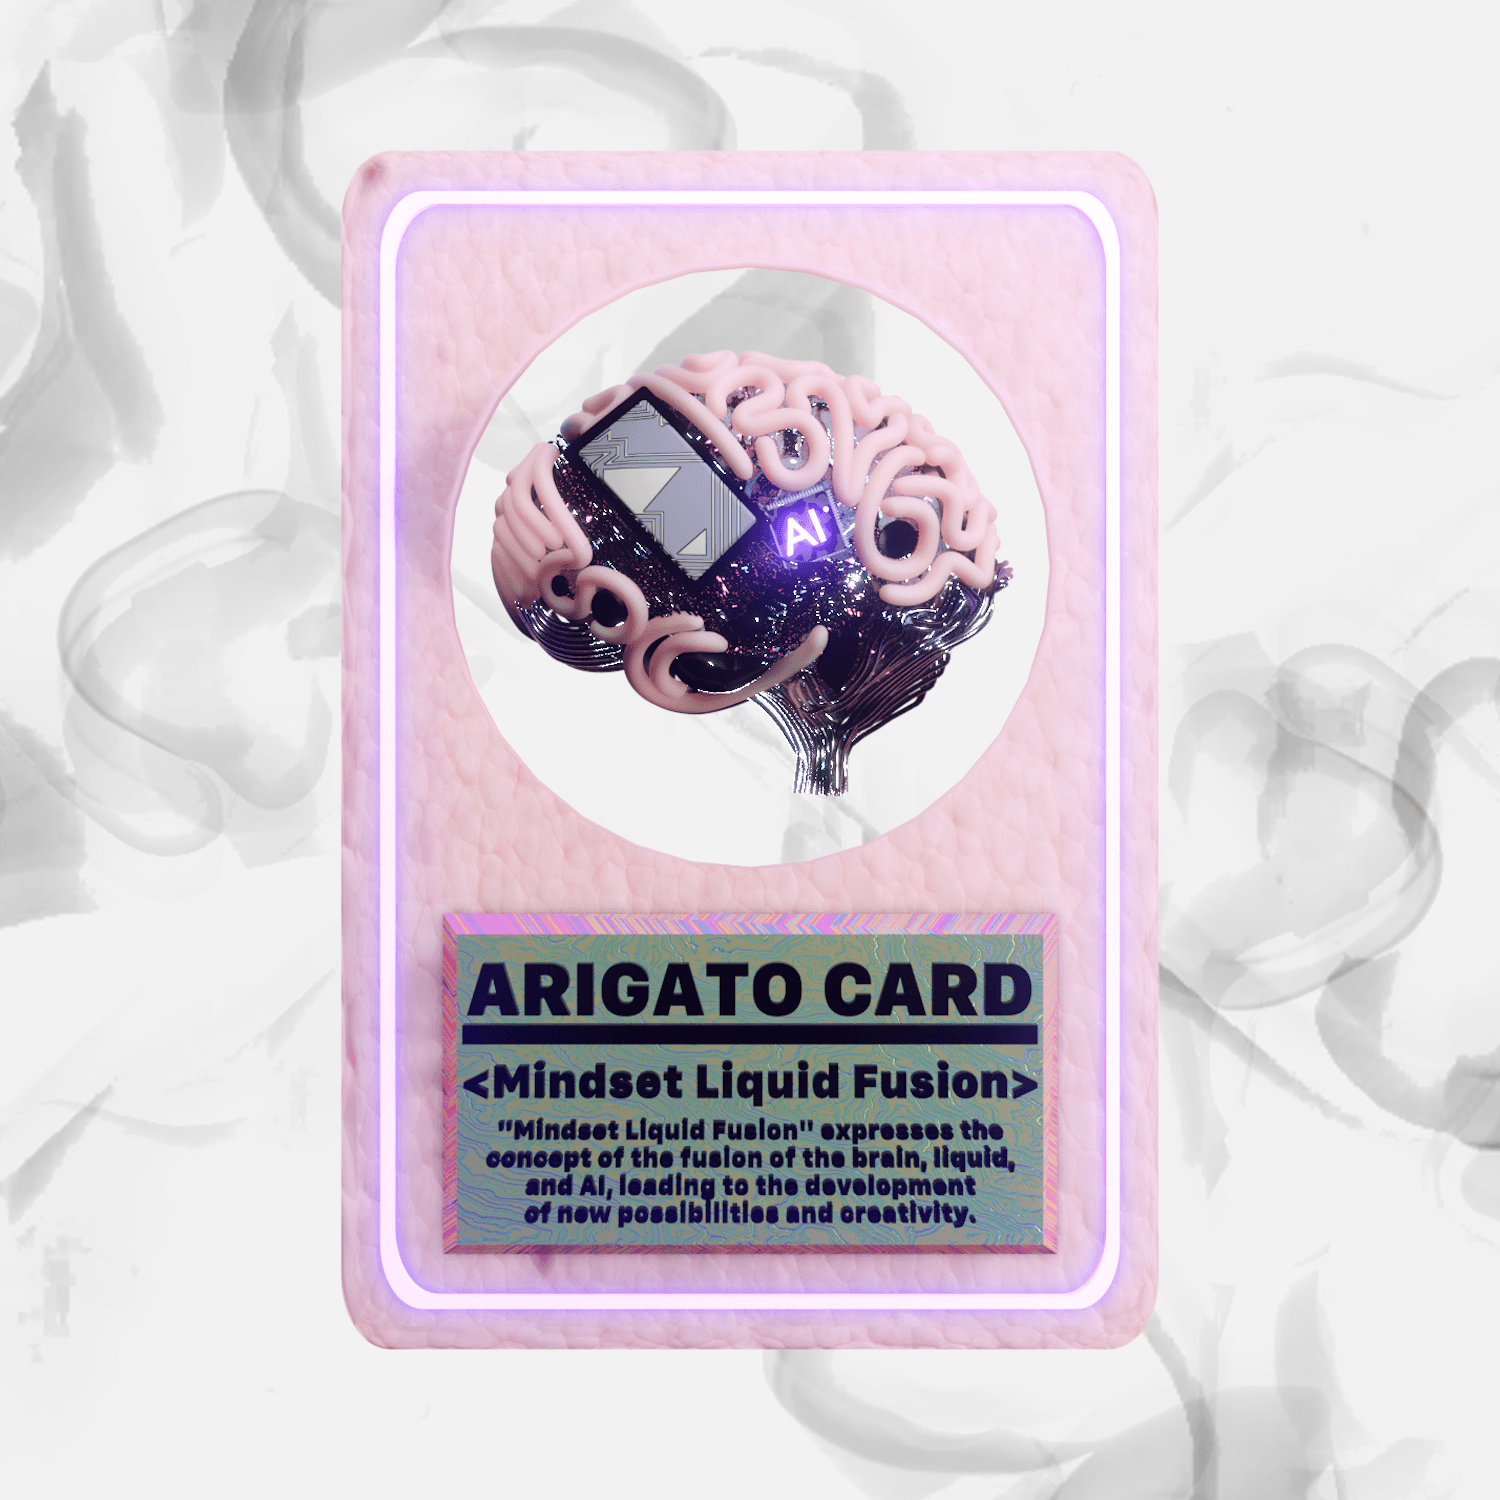 ARIGATO CARD < Mindset Liquid Fusion >